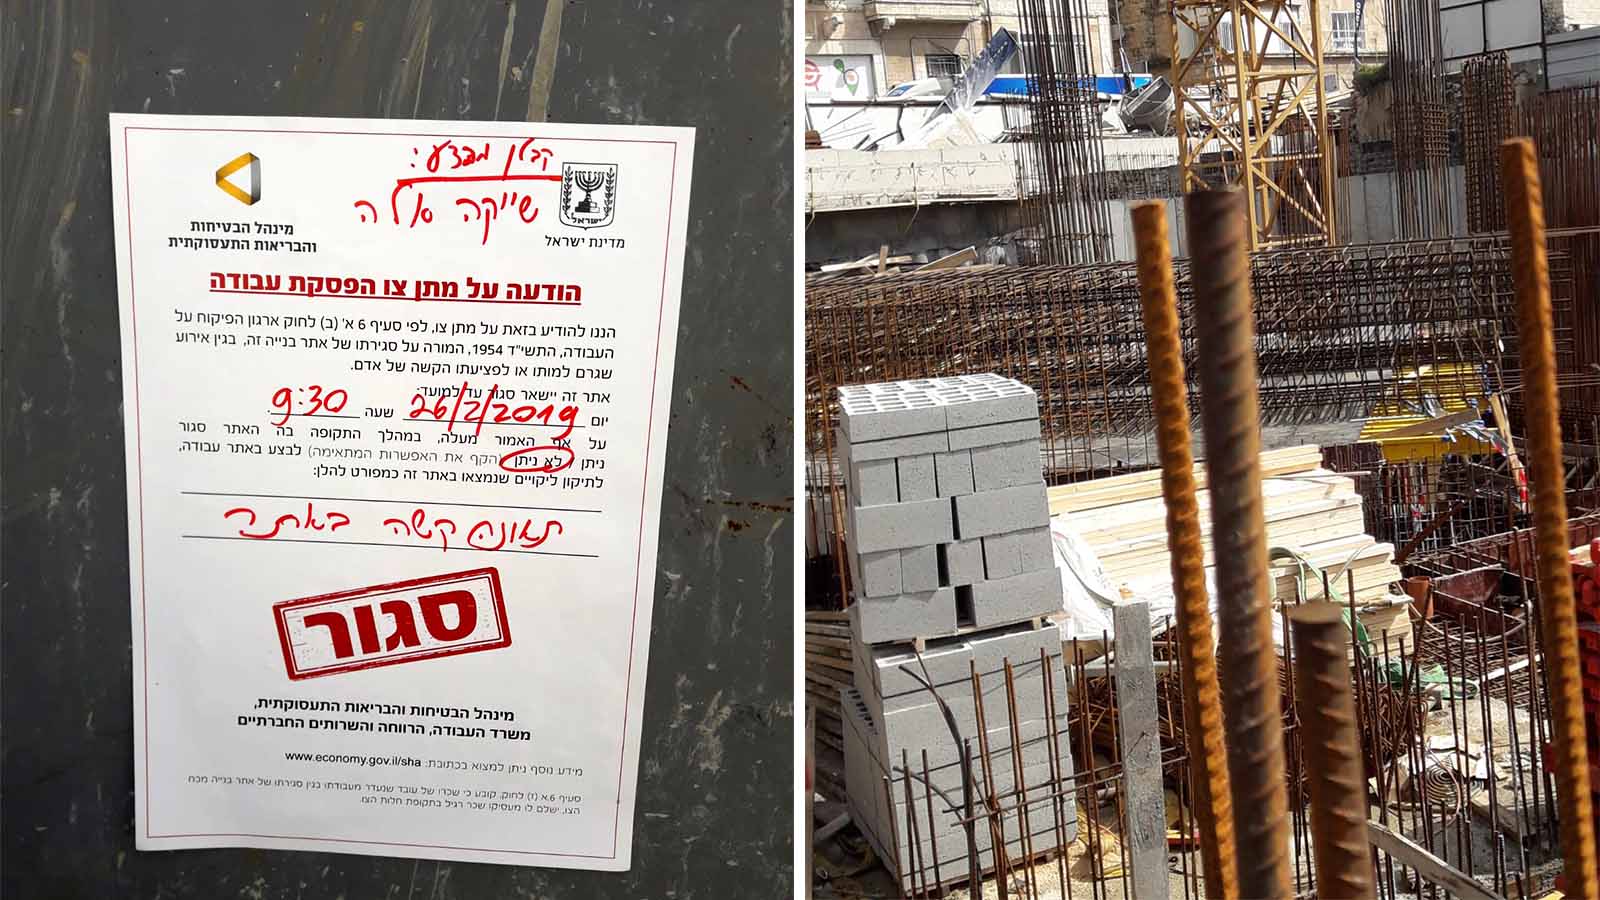 אתר הבנייה ברחוב ראול ולנברג בירושלים בו נהרג עובד. (צילום: משרד העבודה והרווחה)